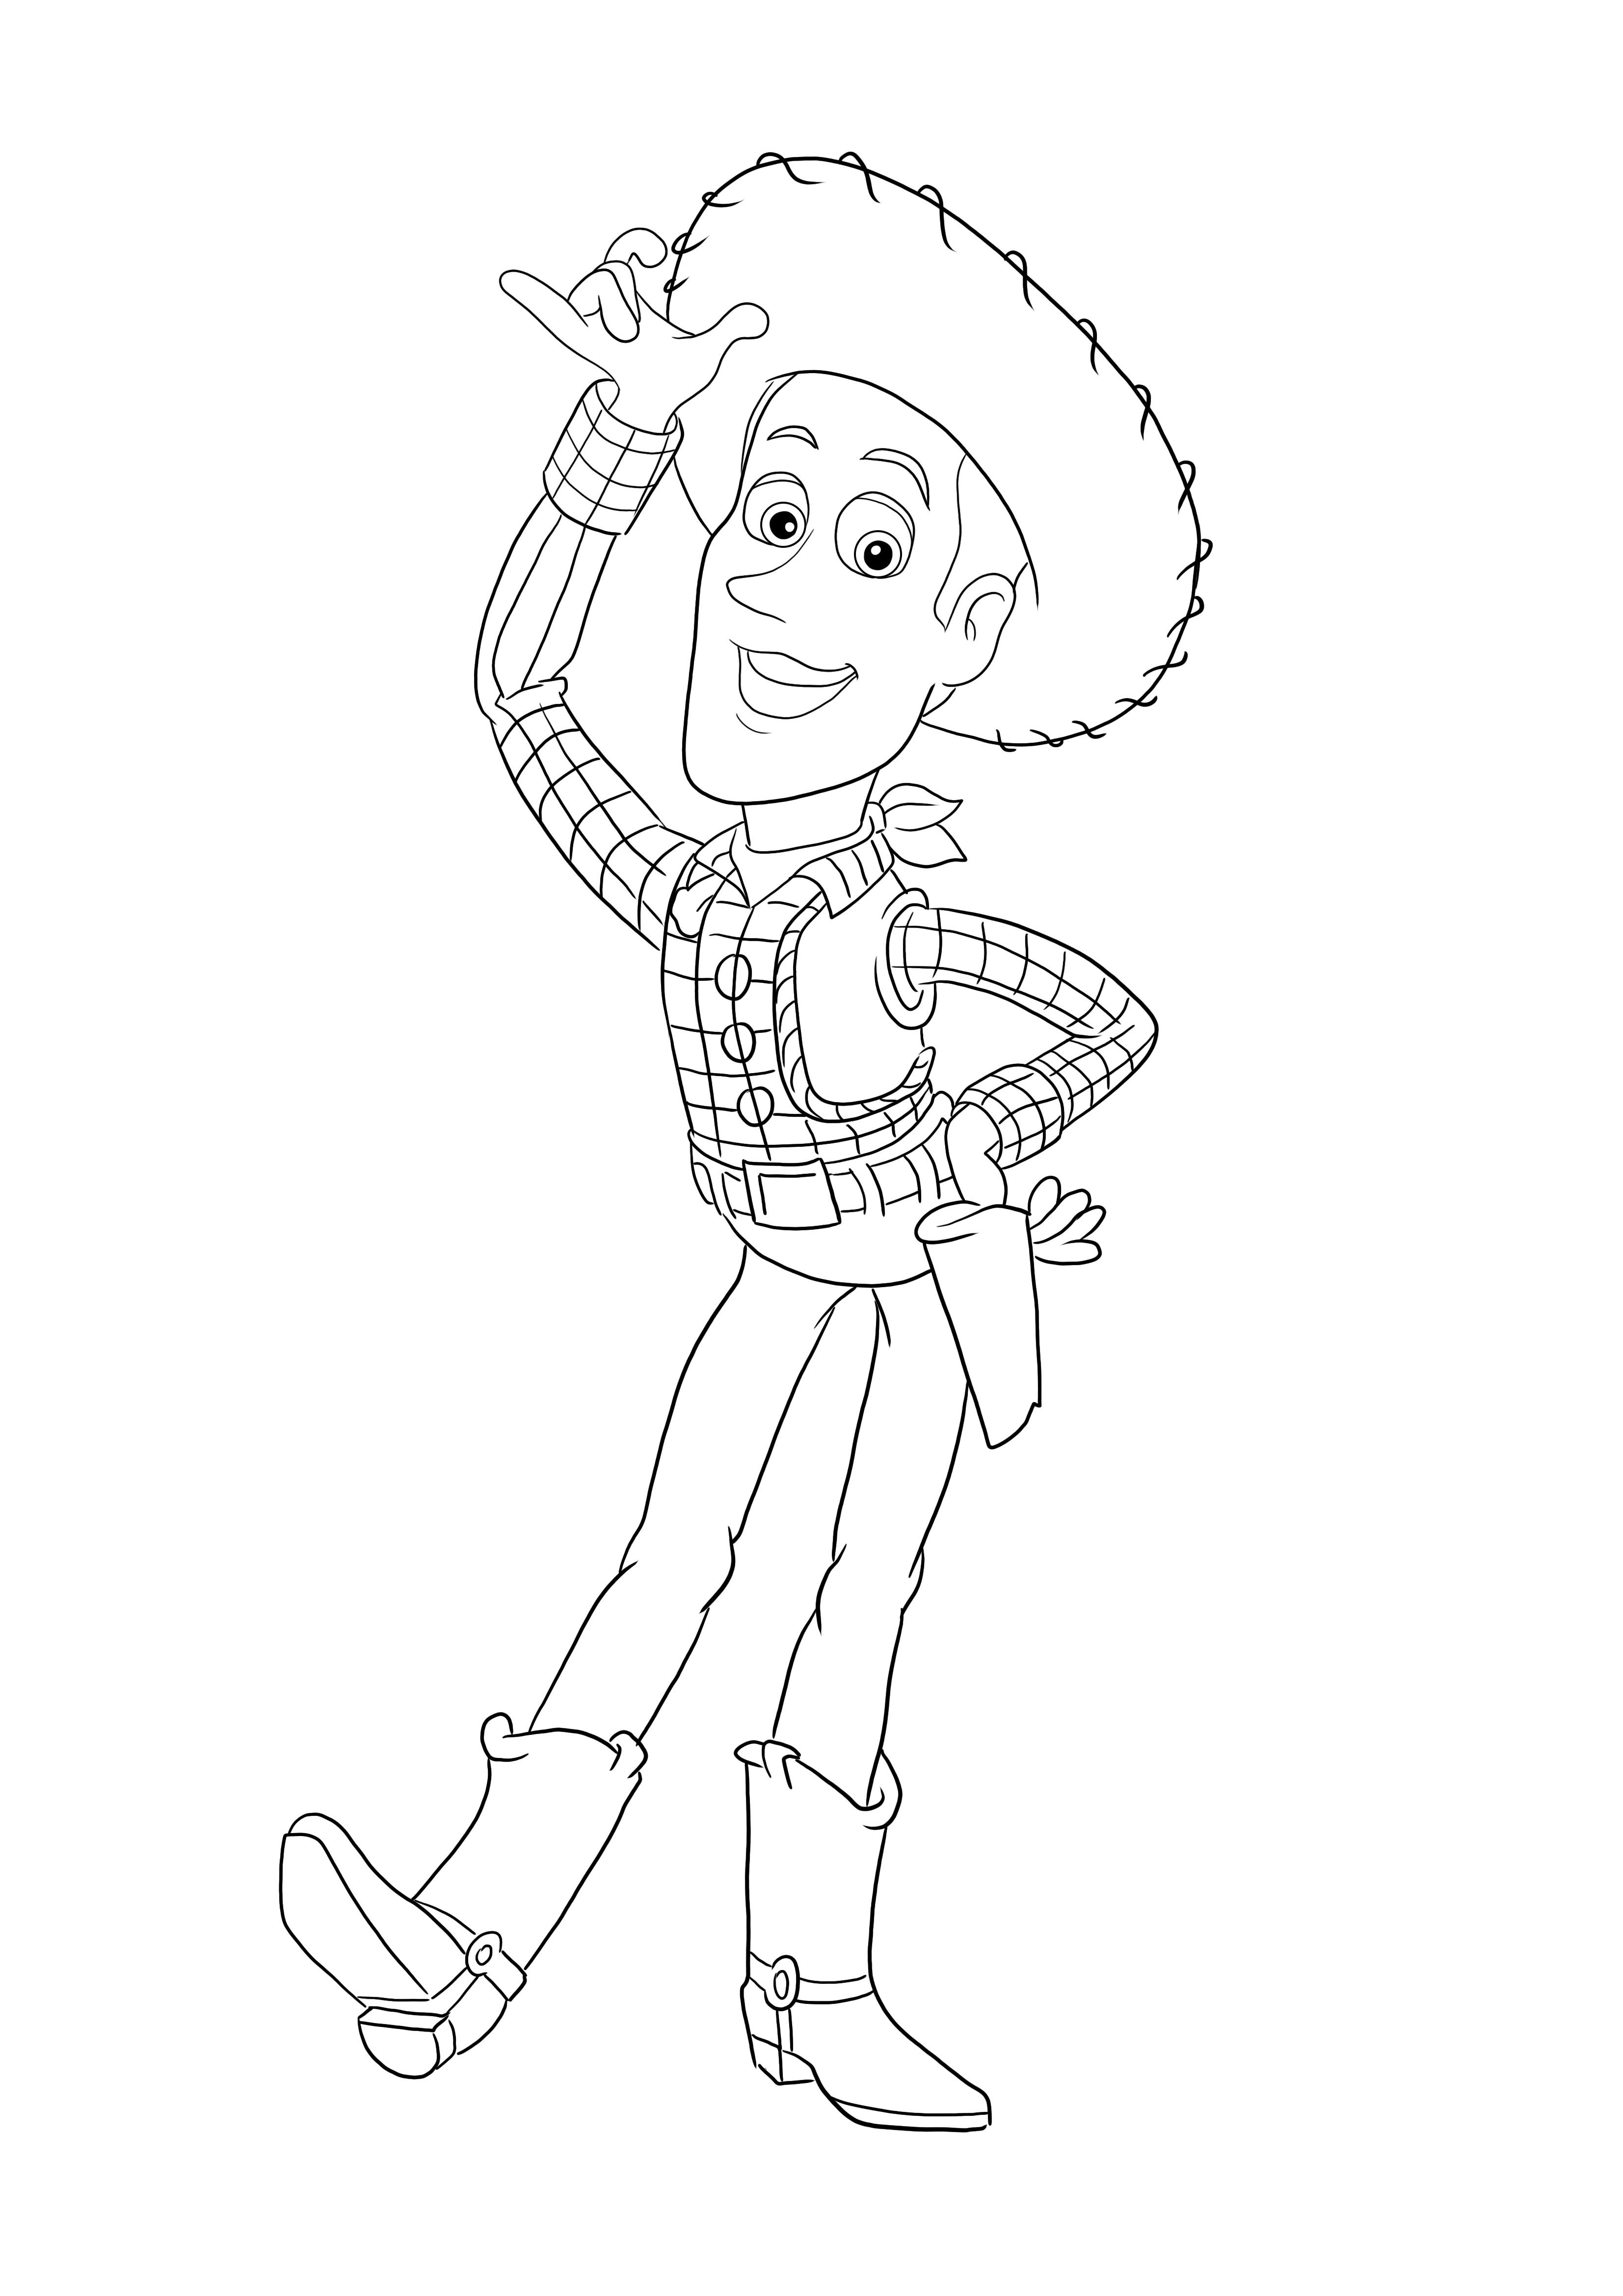 Pagine da colorare di Woody di Toy Story gratis da stampare o scaricare per tutte le età